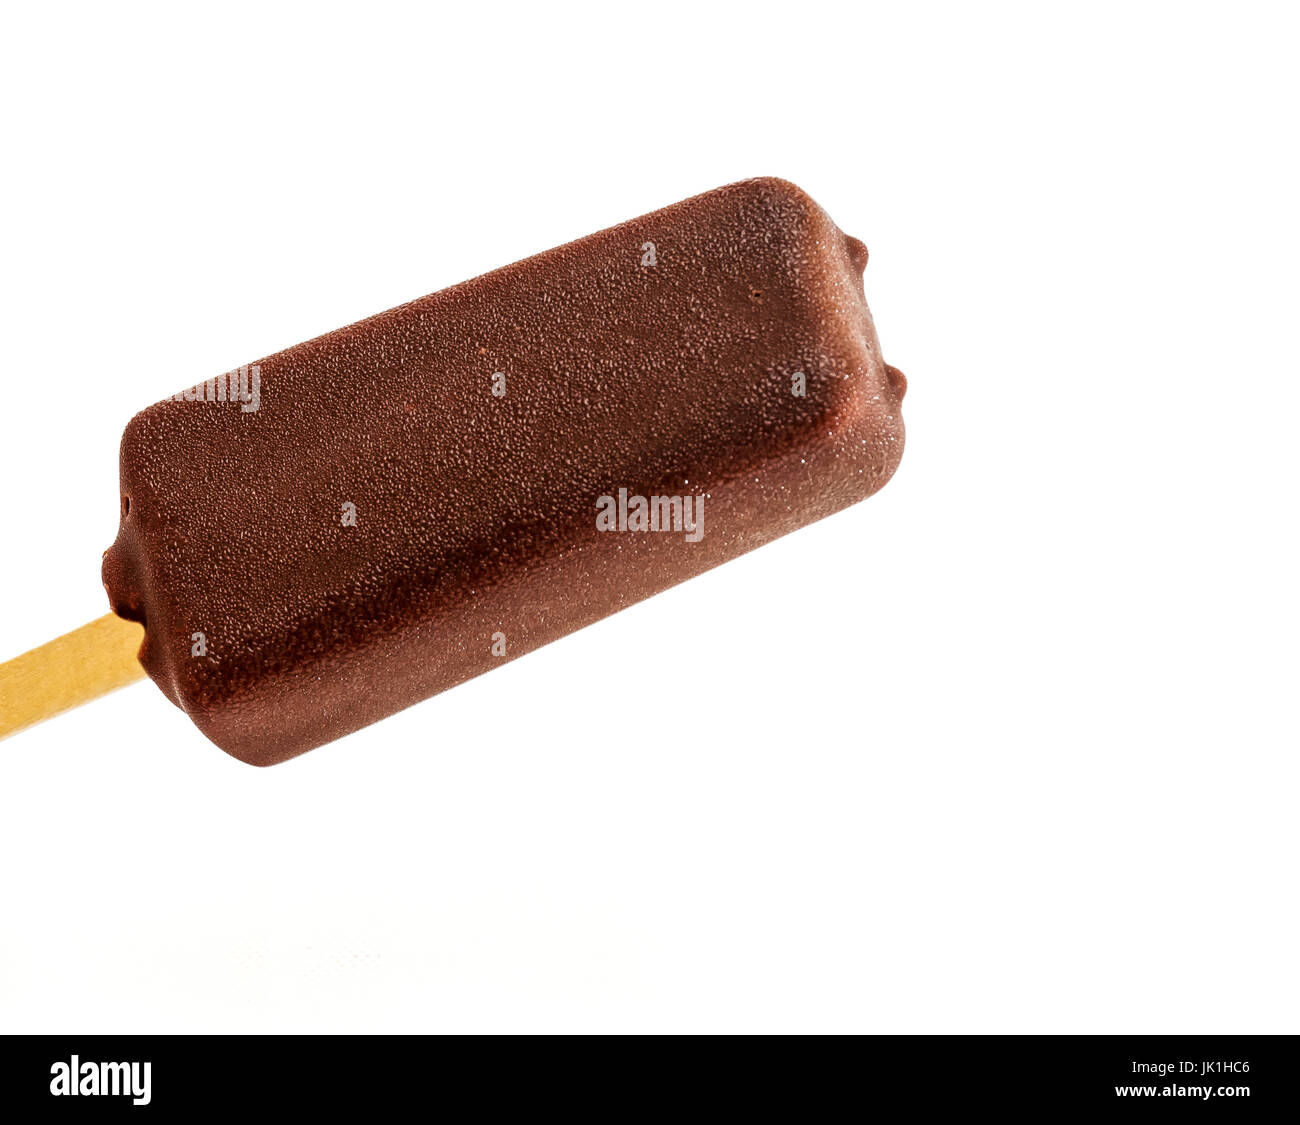 Eisbecher mit Eis in einem Schokoladenguss auf einem Stock auf einem weißen Hintergrund Stockfoto